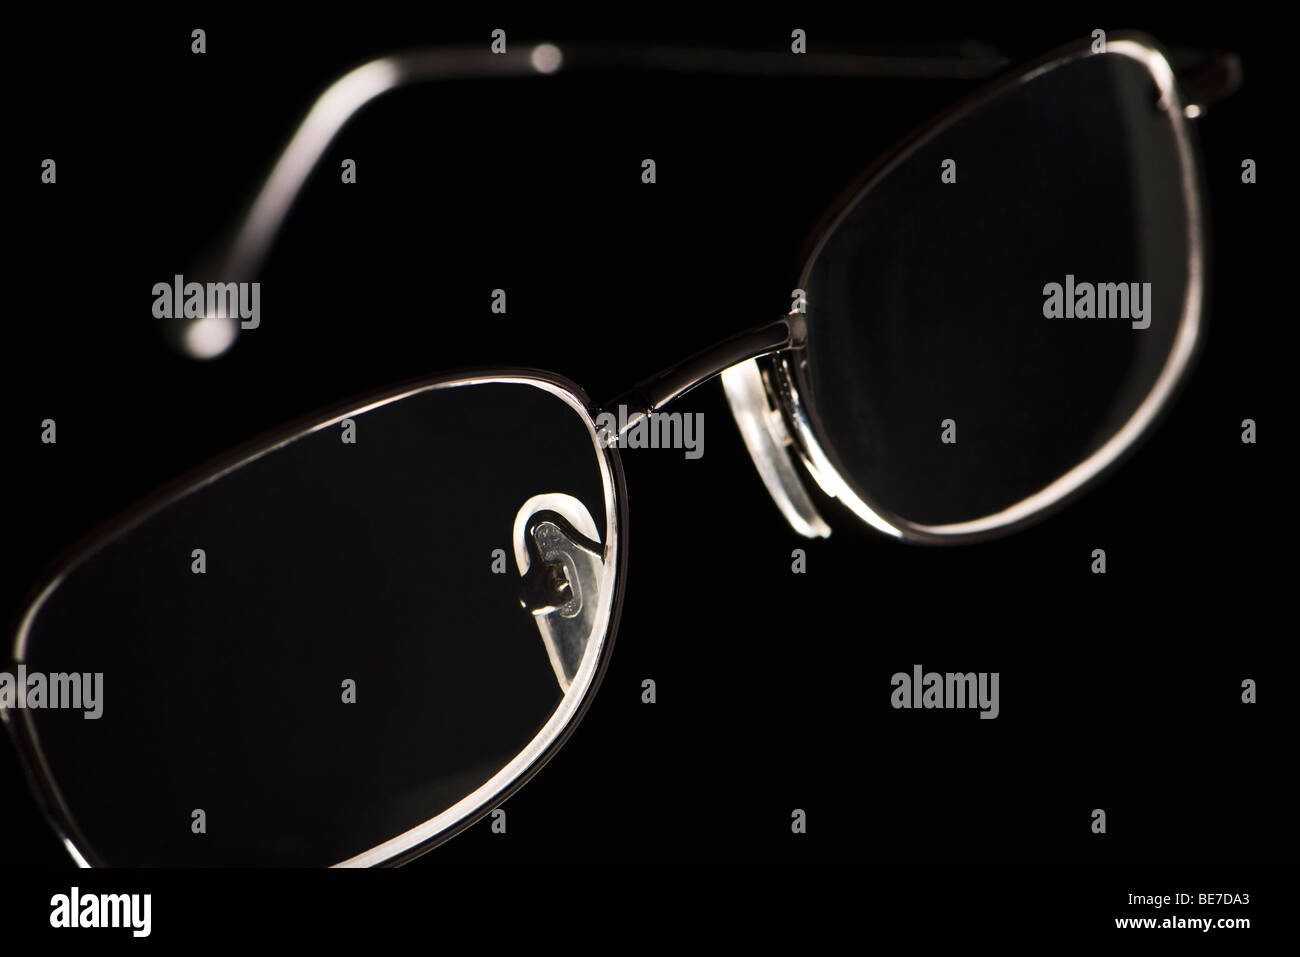 Eyeglasses on black background Stock Photo